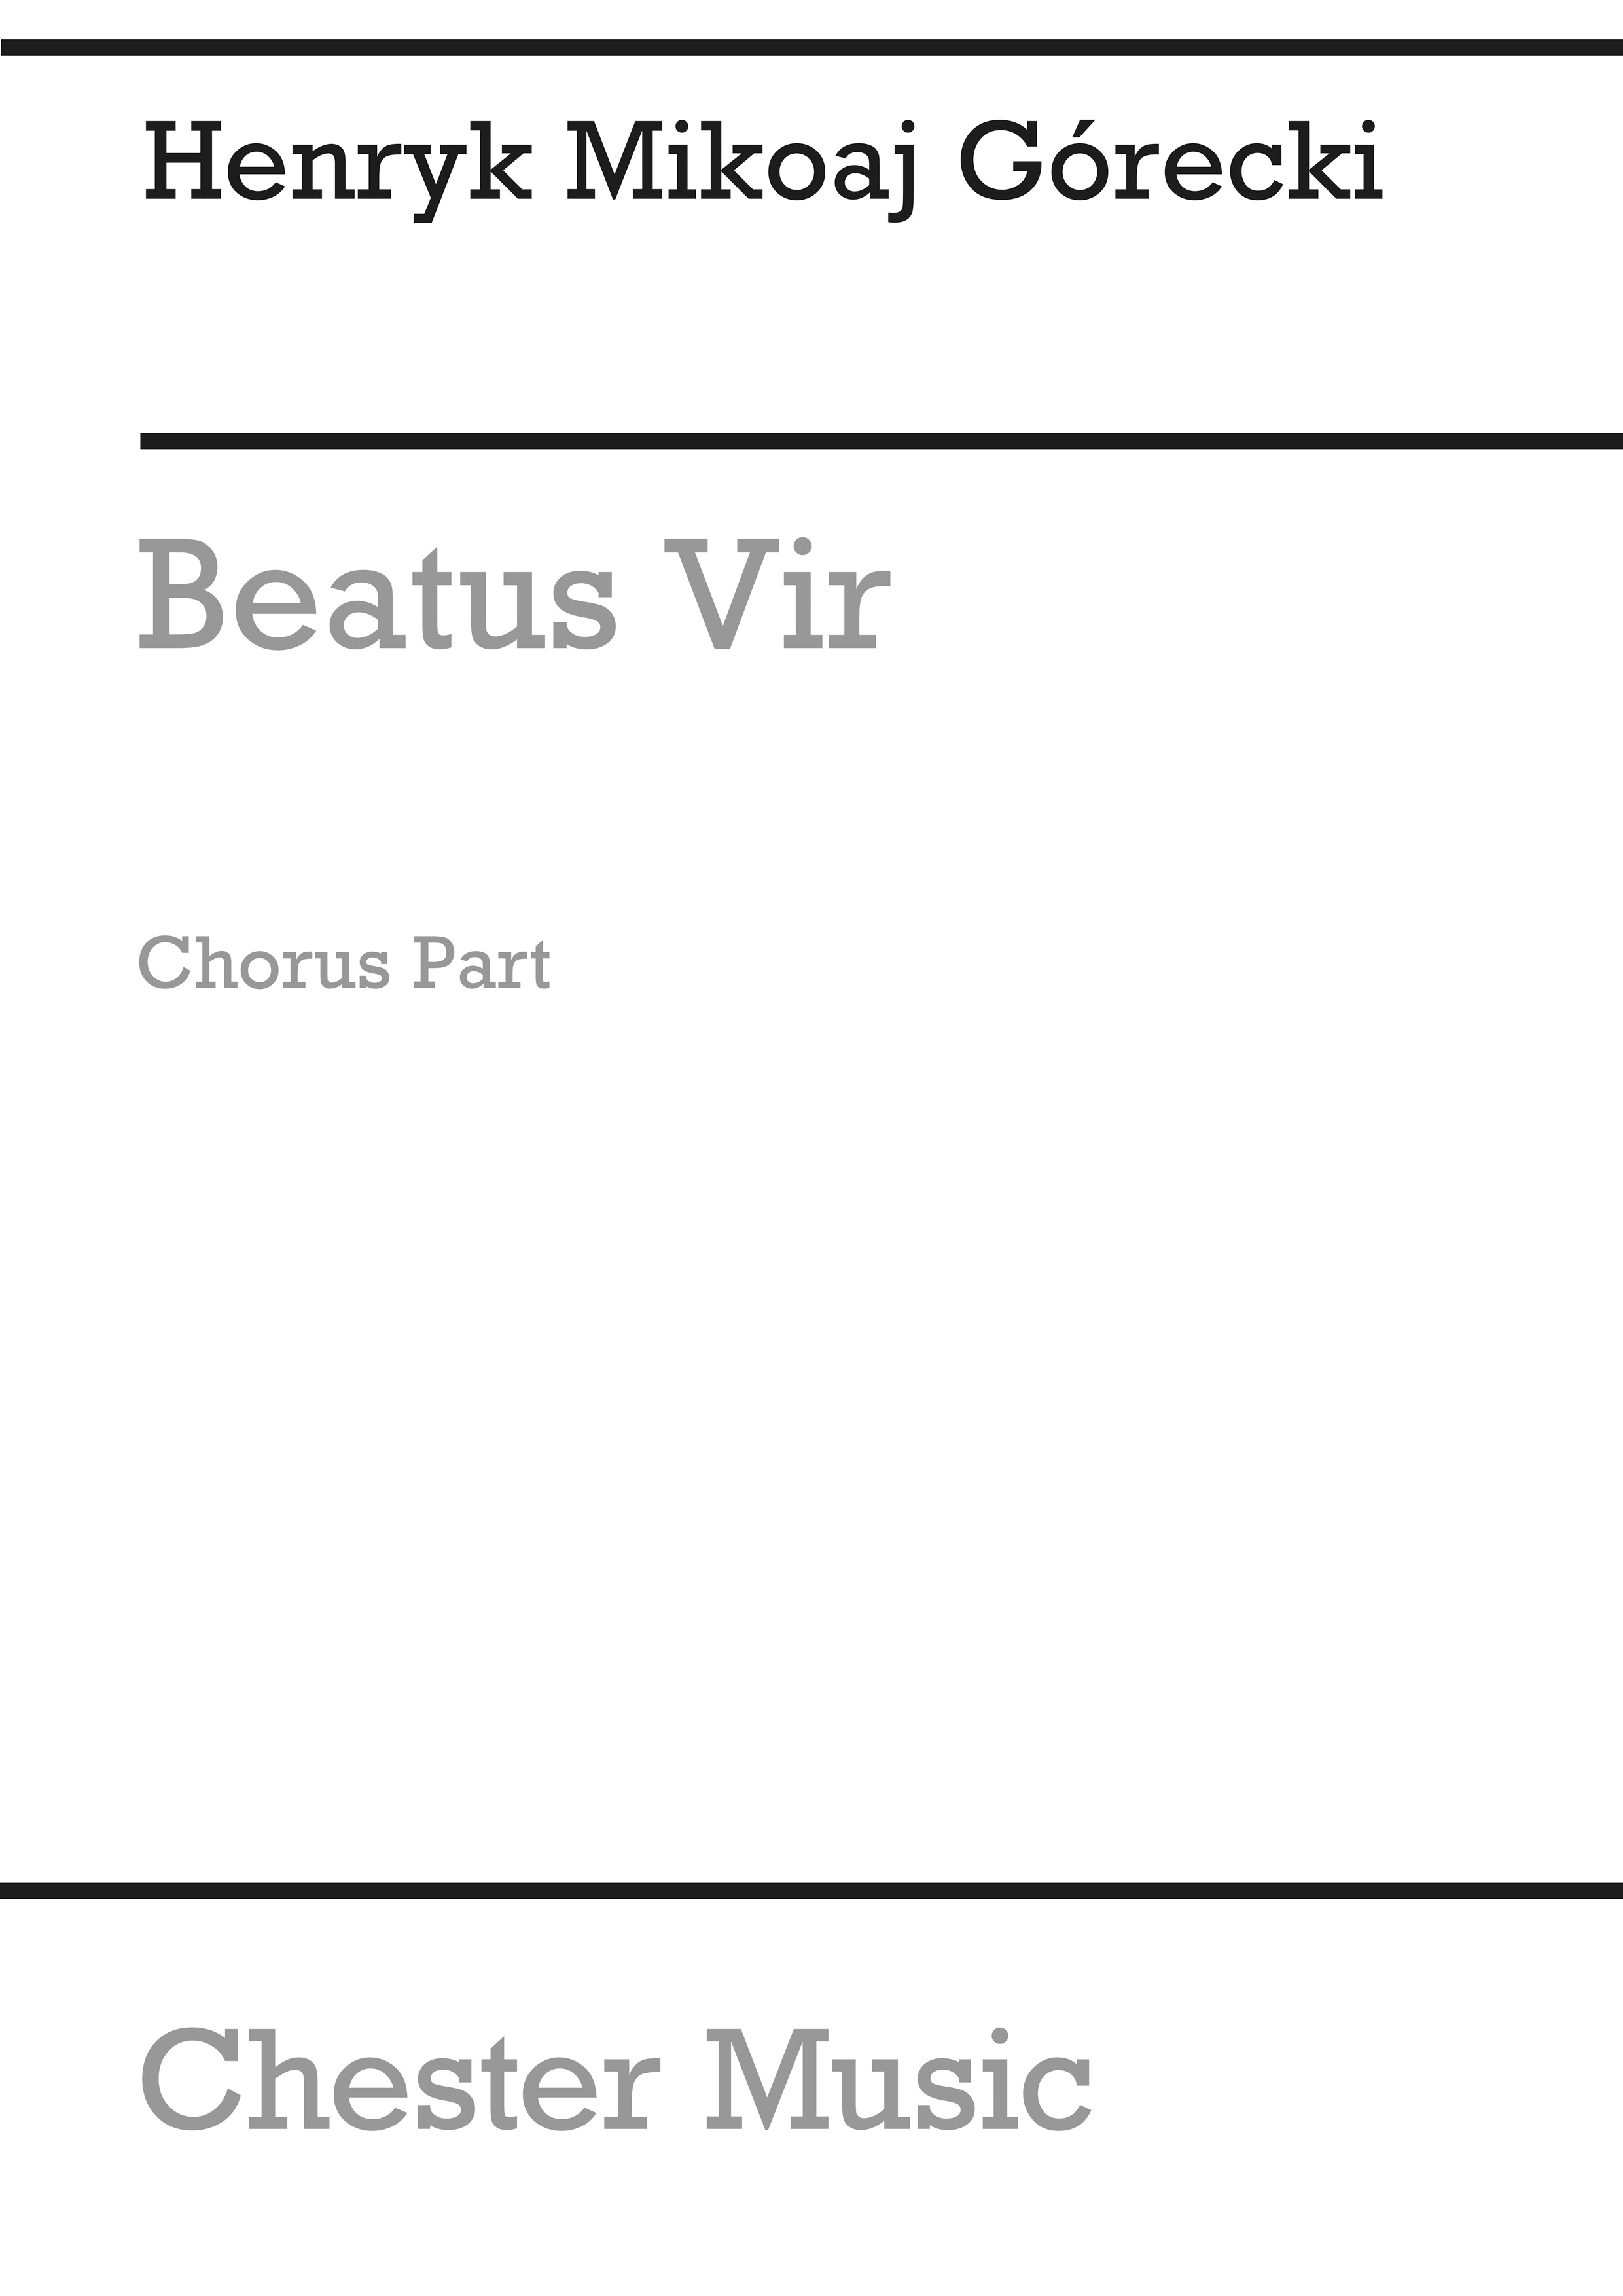 Gorecki: Beatus Vir (Chorus Part)